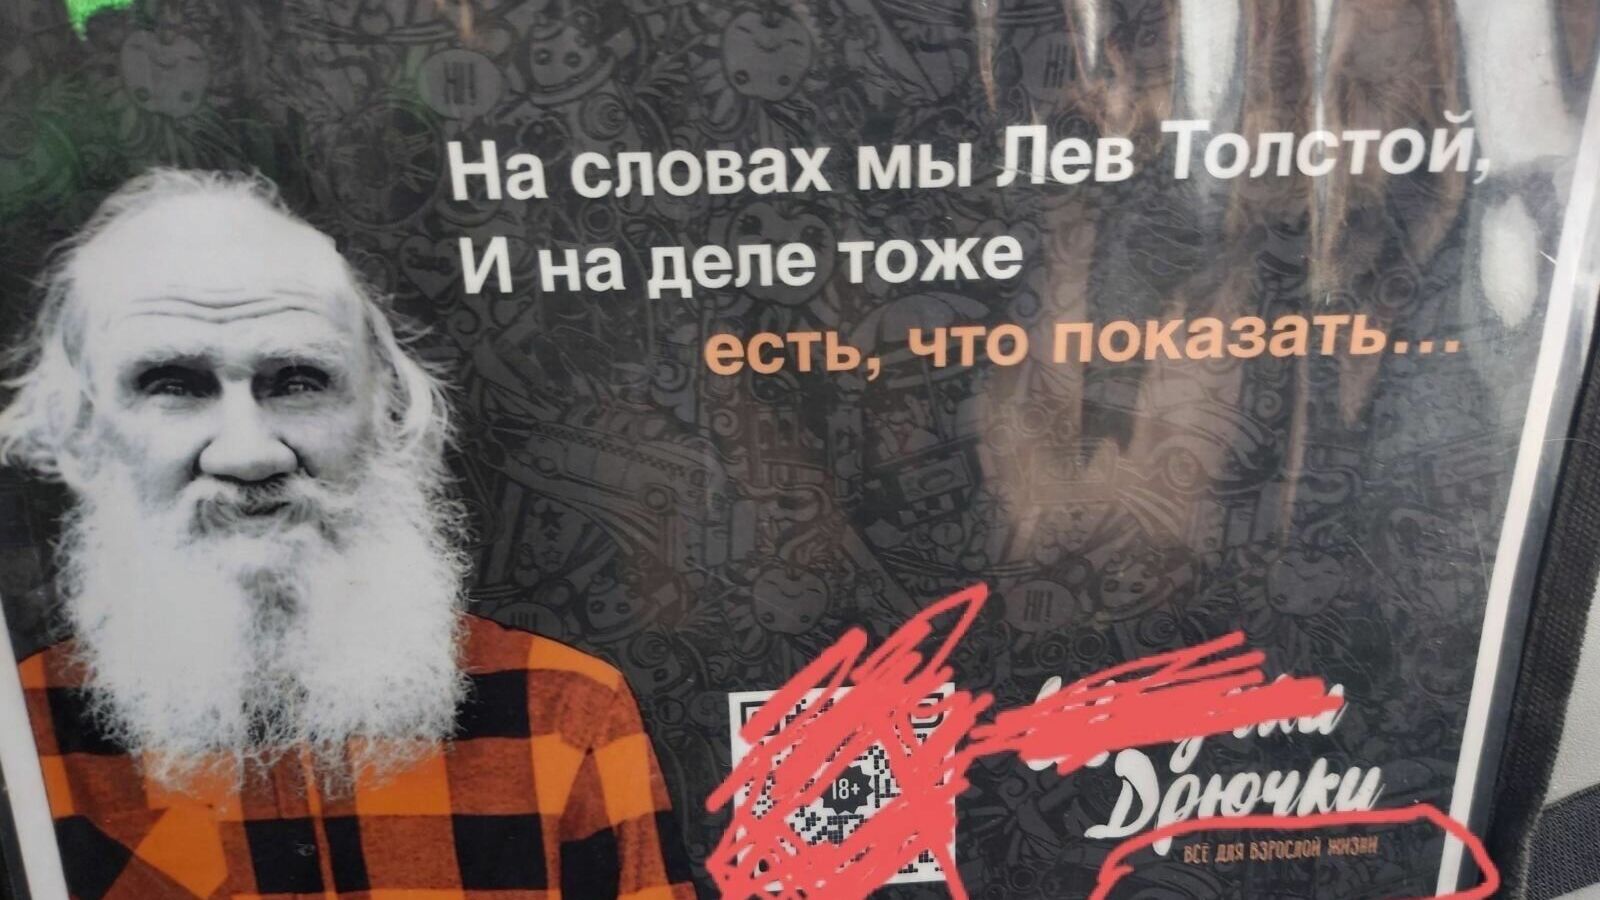 Жители Тюмень возмутились рекламой интимного магазина со Львом Толстым